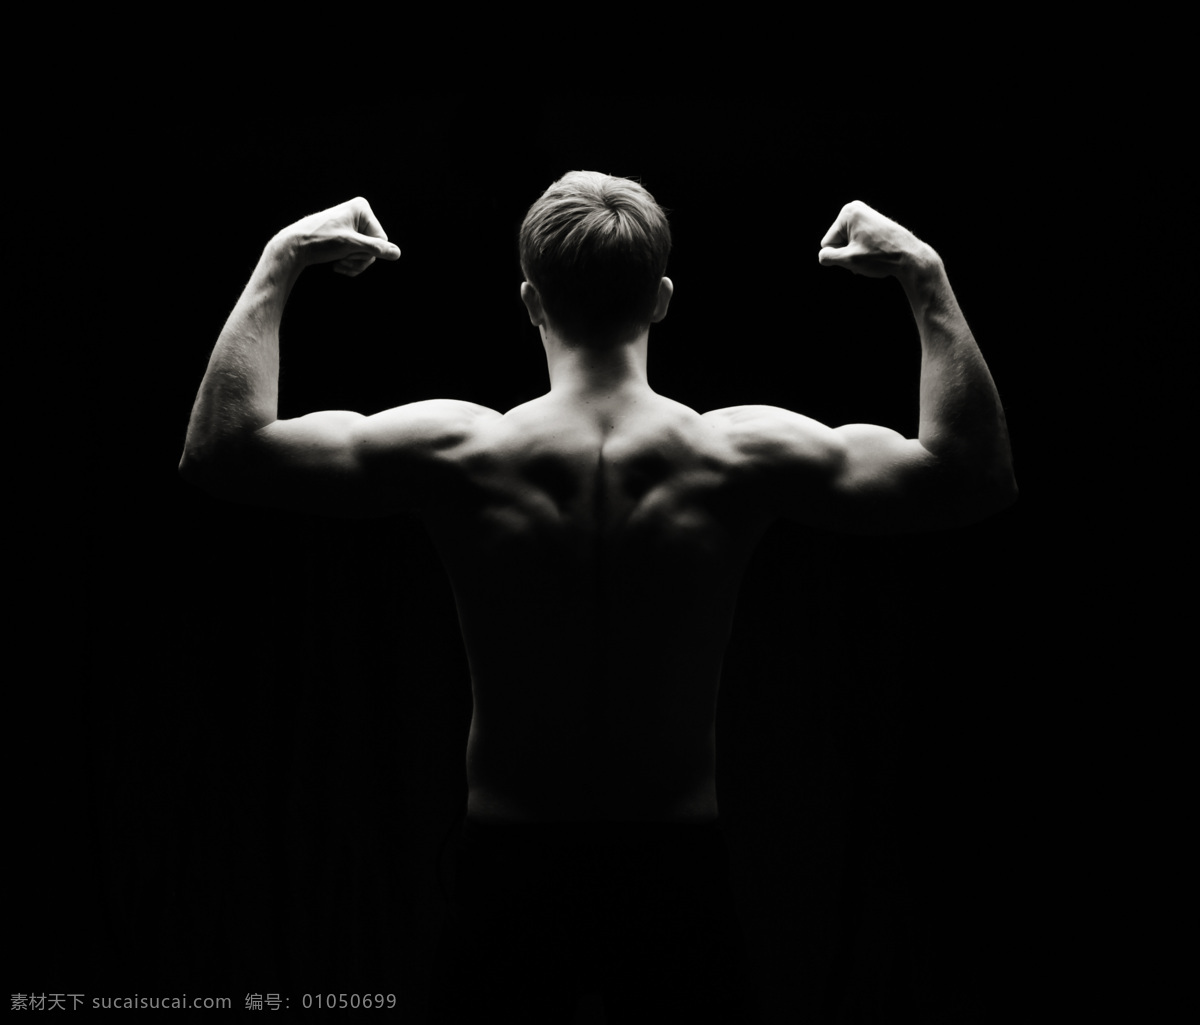 展示 背部 肌肉 健美 男人 健美男人 健身 健康 健壮 拳头 手势 背影 背肌 展示肌肉 展示背肌 强壮 魅力男人 高清图片 男人图片 人物图片